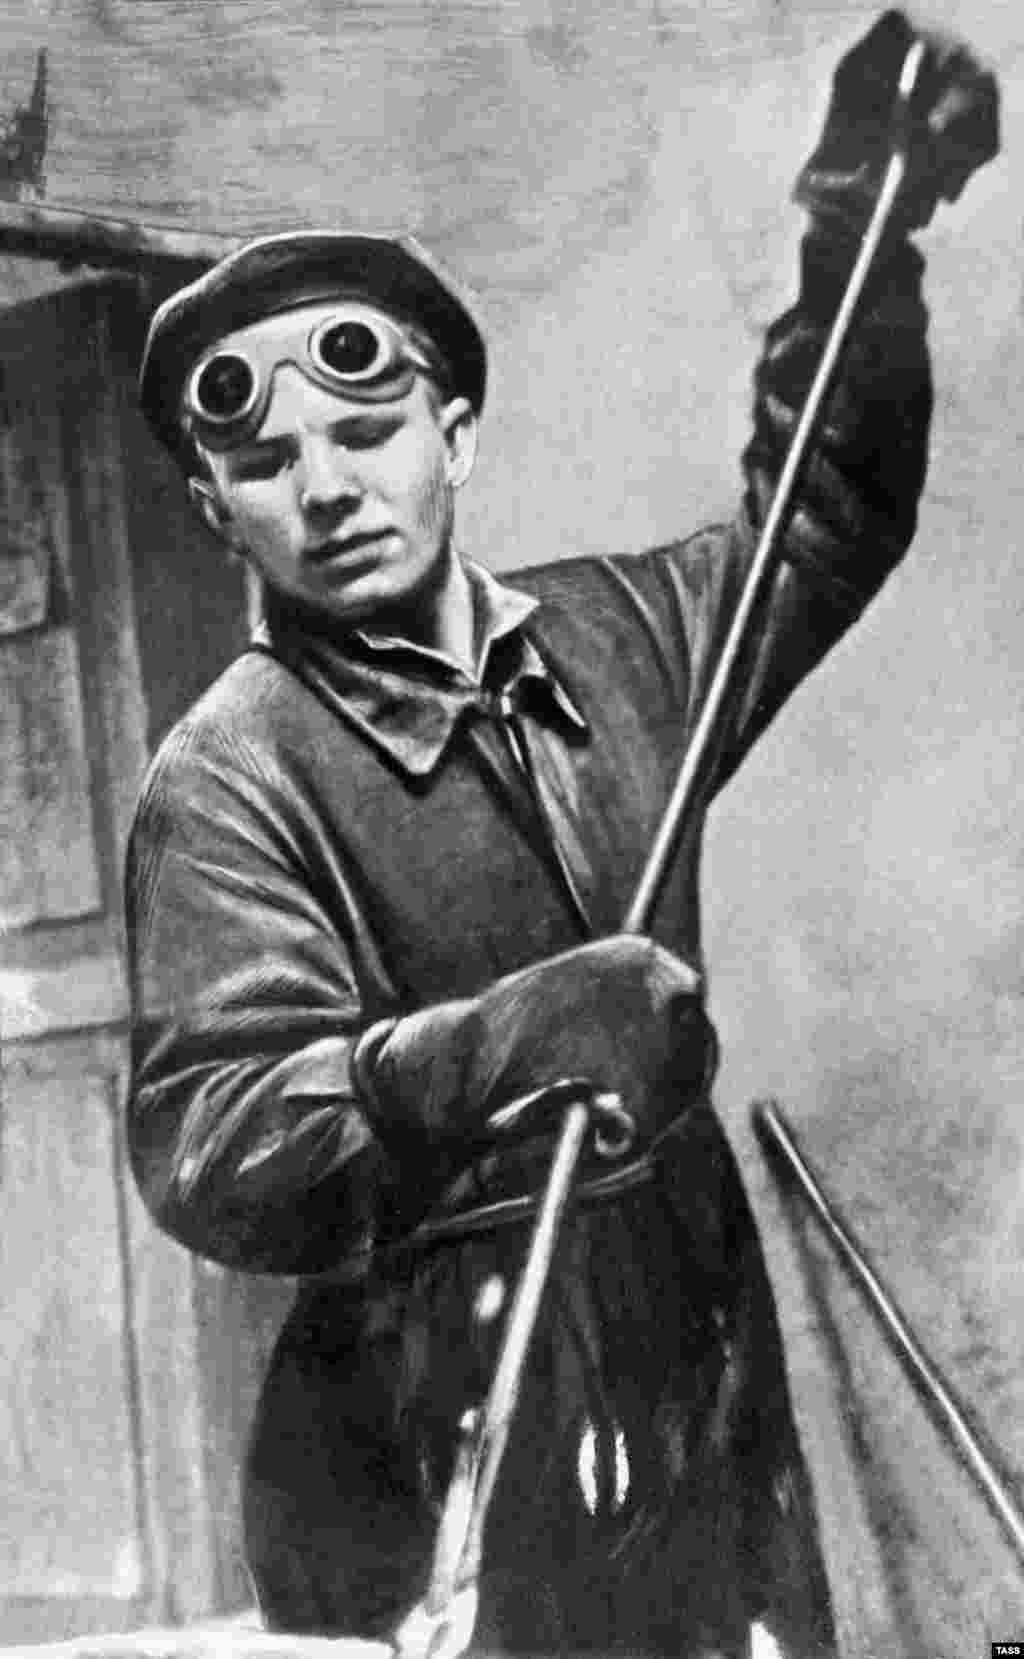 Гагарин в литейном цеху Люберецкого металлургического завода в 1951 году. Будущий космонавт окончил ремесленное училище по специальности литейщика, а затем продолжил обучение в Саратовском техническом училище по специальности тракториста.